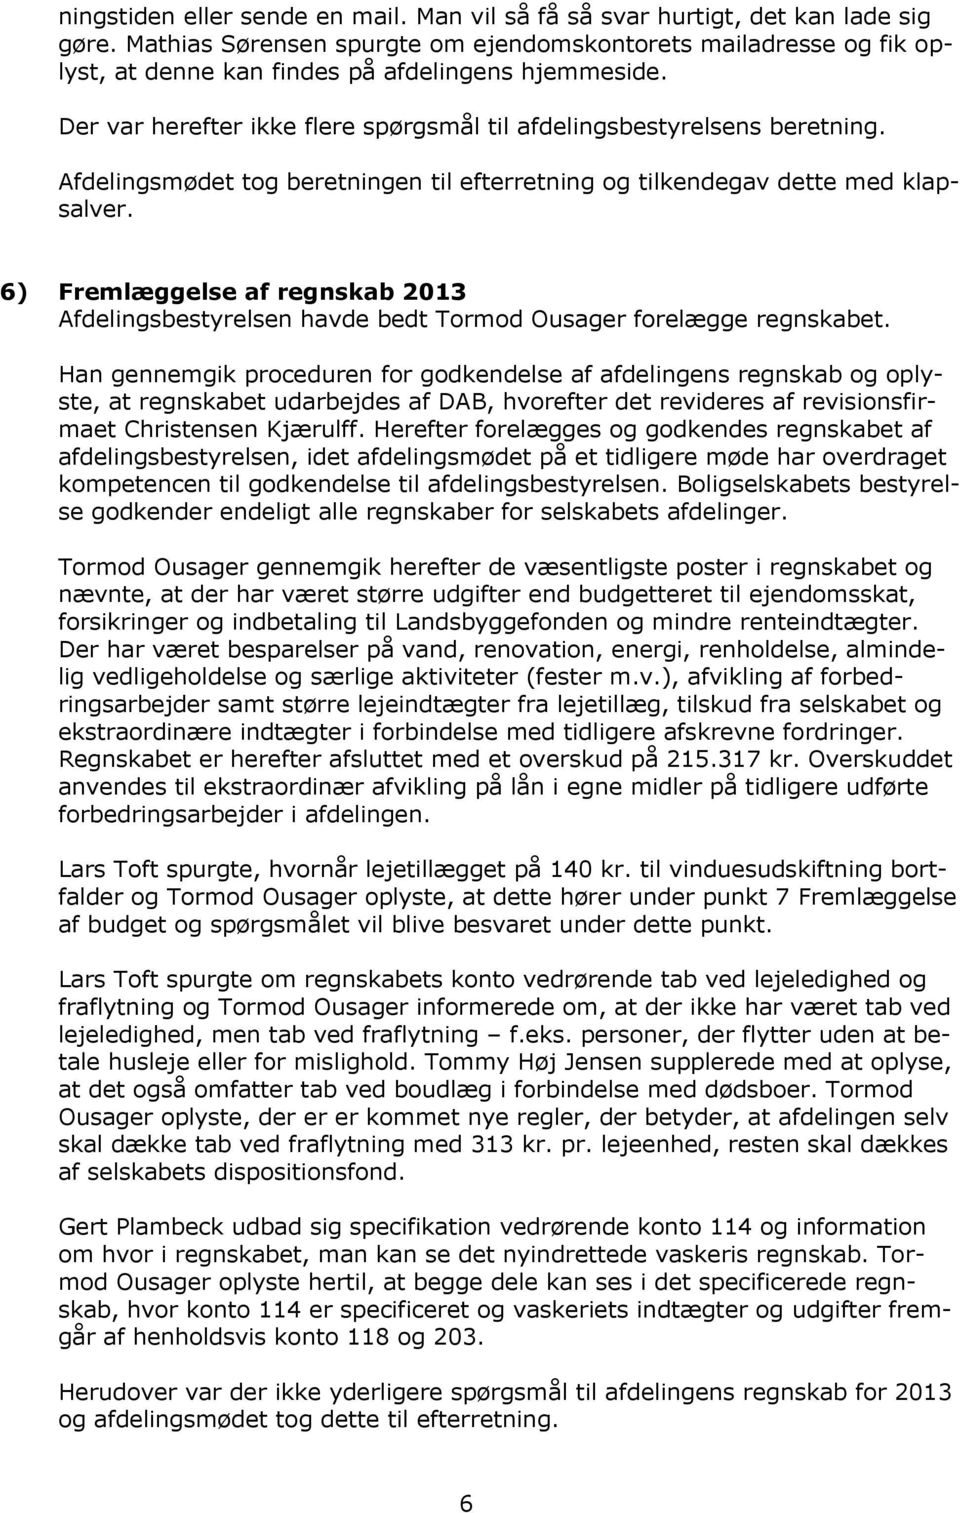 Afdelingsmødet tog beretningen til efterretning og tilkendegav dette med klapsalver. 6) Fremlæggelse af regnskab 2013 Afdelingsbestyrelsen havde bedt Tormod Ousager forelægge regnskabet.